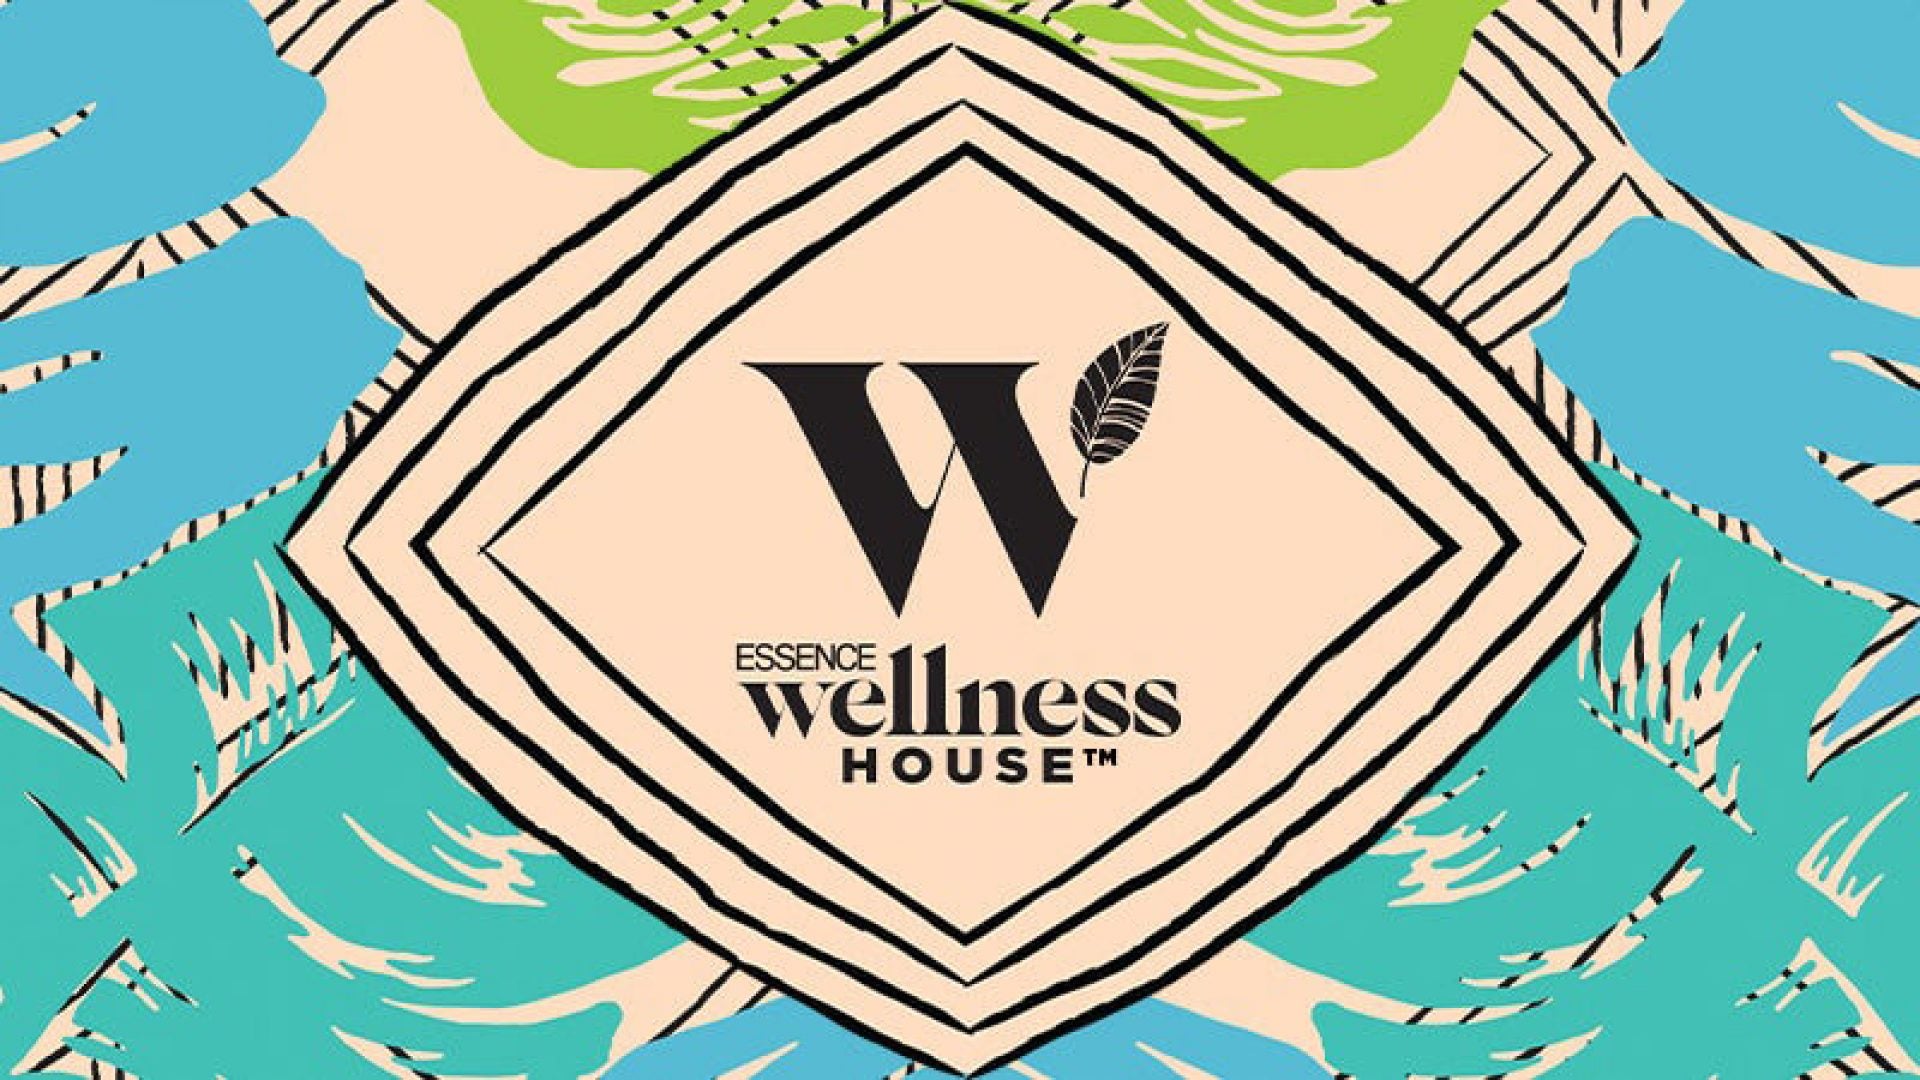 ESSENCE Wellness House A List Of Over 20 Black Health & Wellness